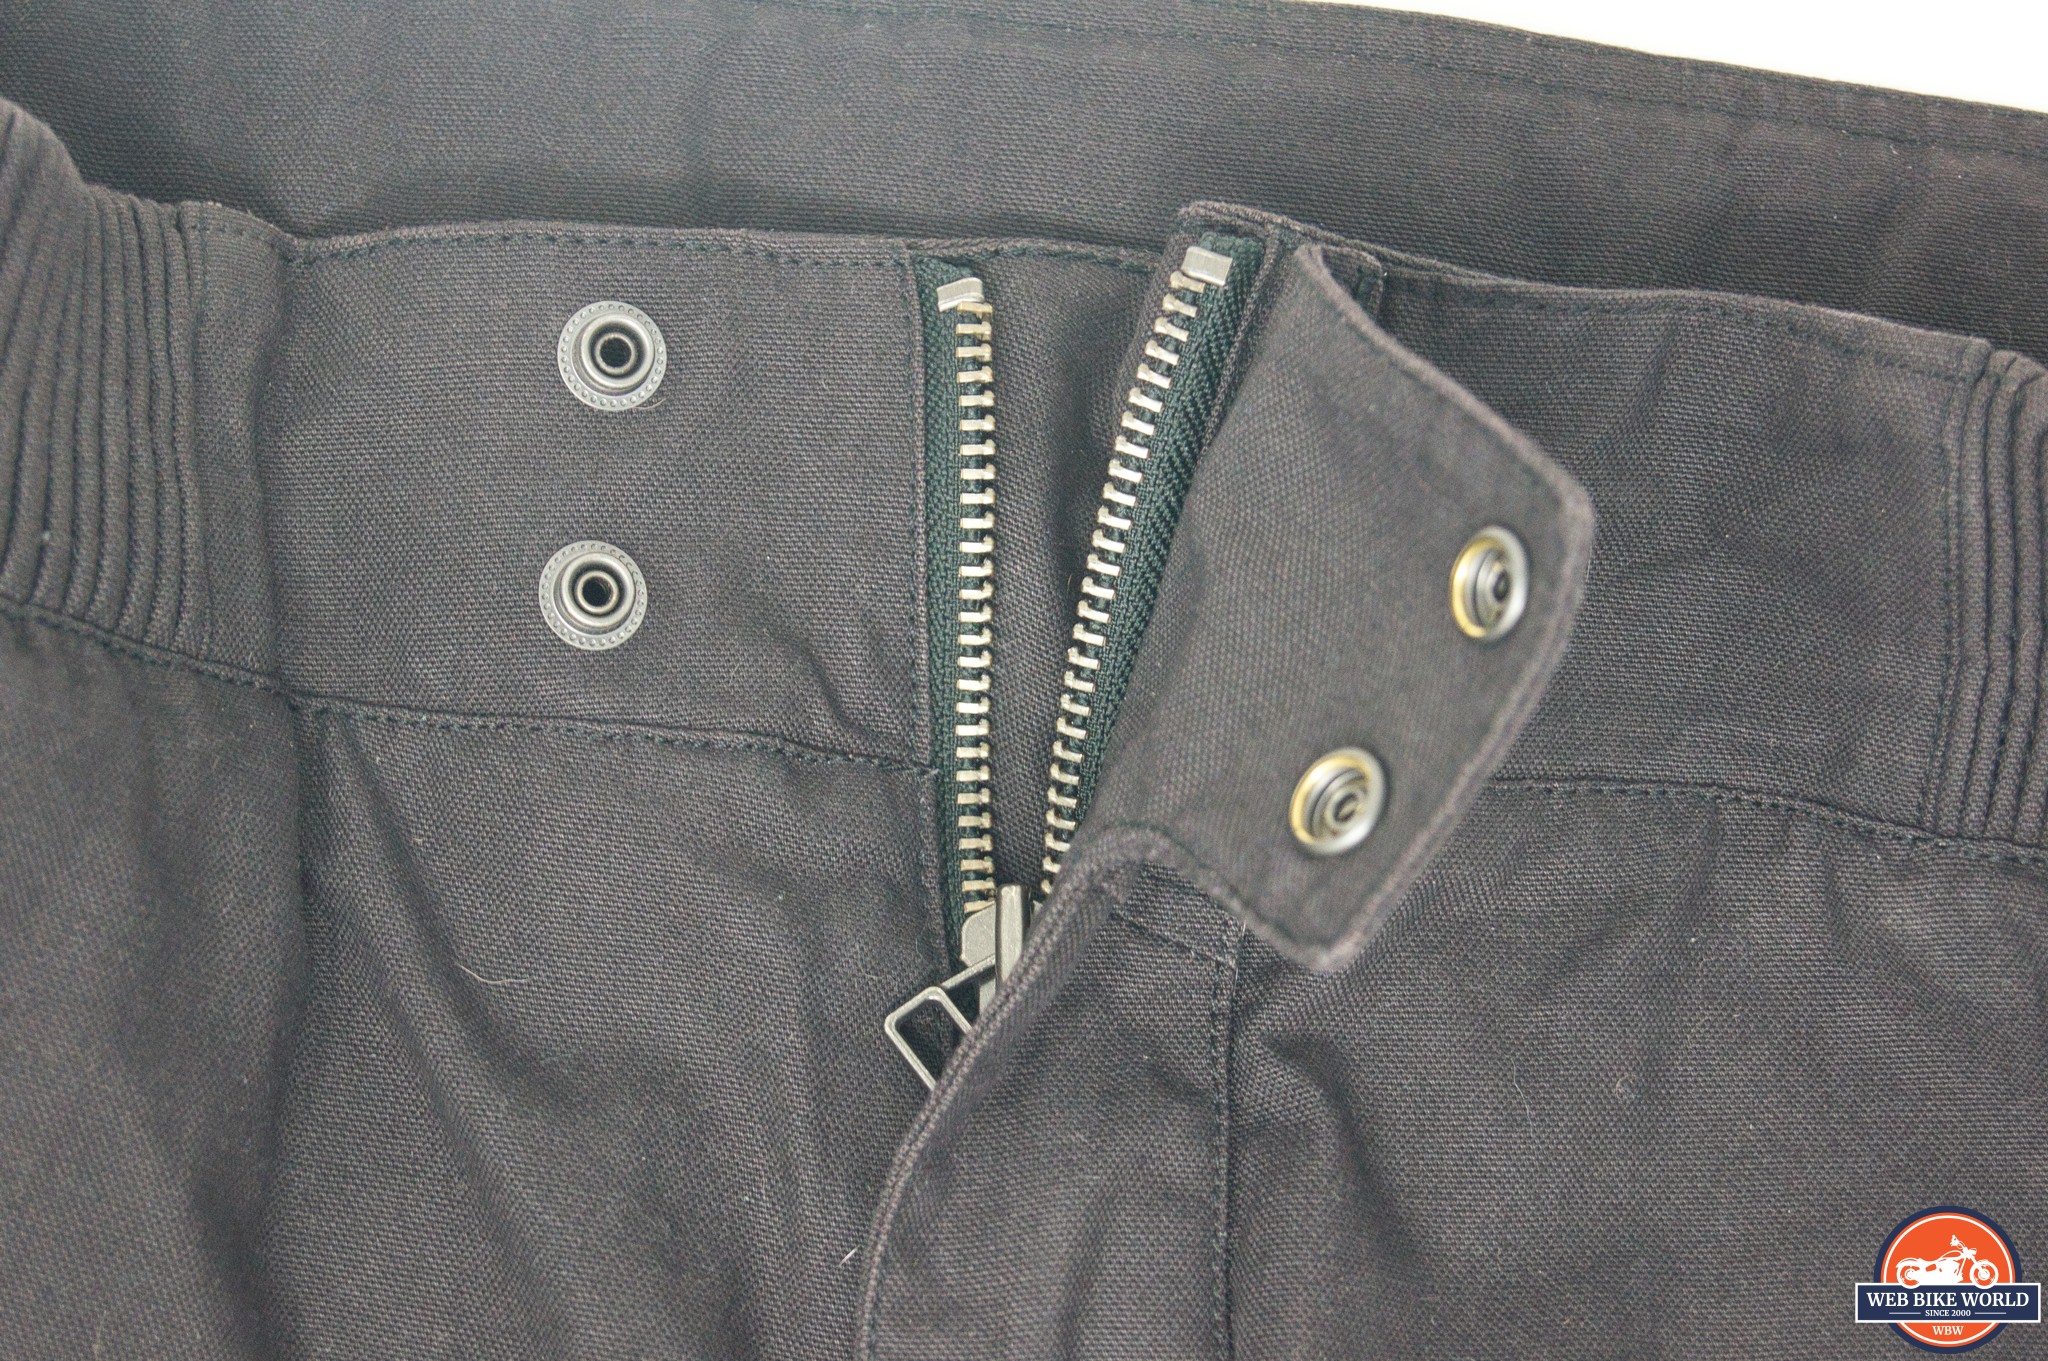 Closeup of the front zipper